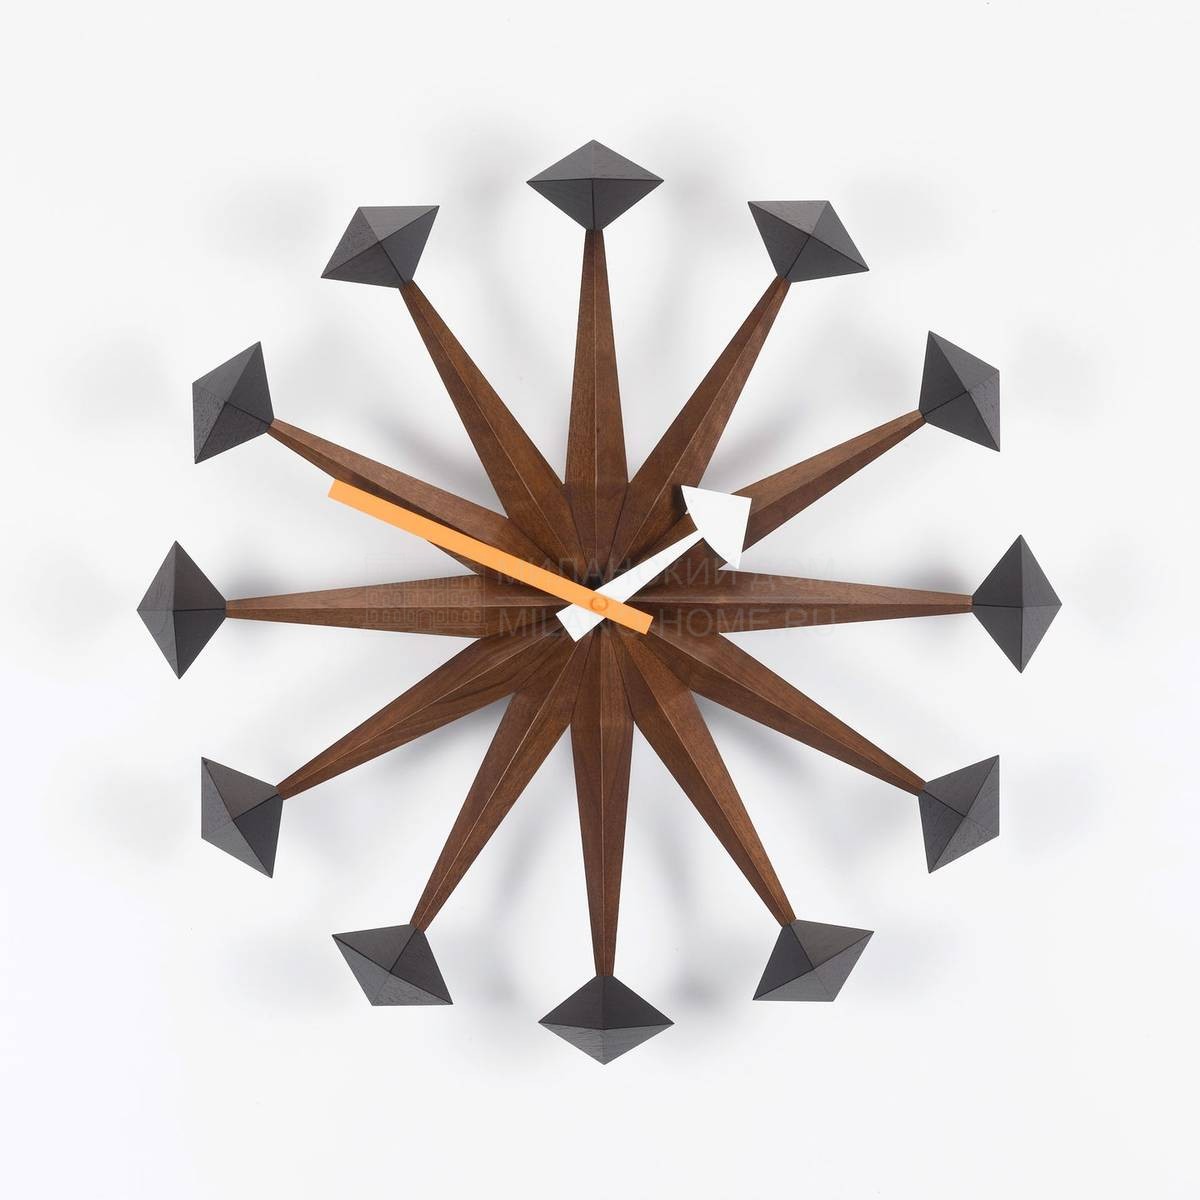 Настенные часы Polygon Clock из Швейцарии фабрики VITRA